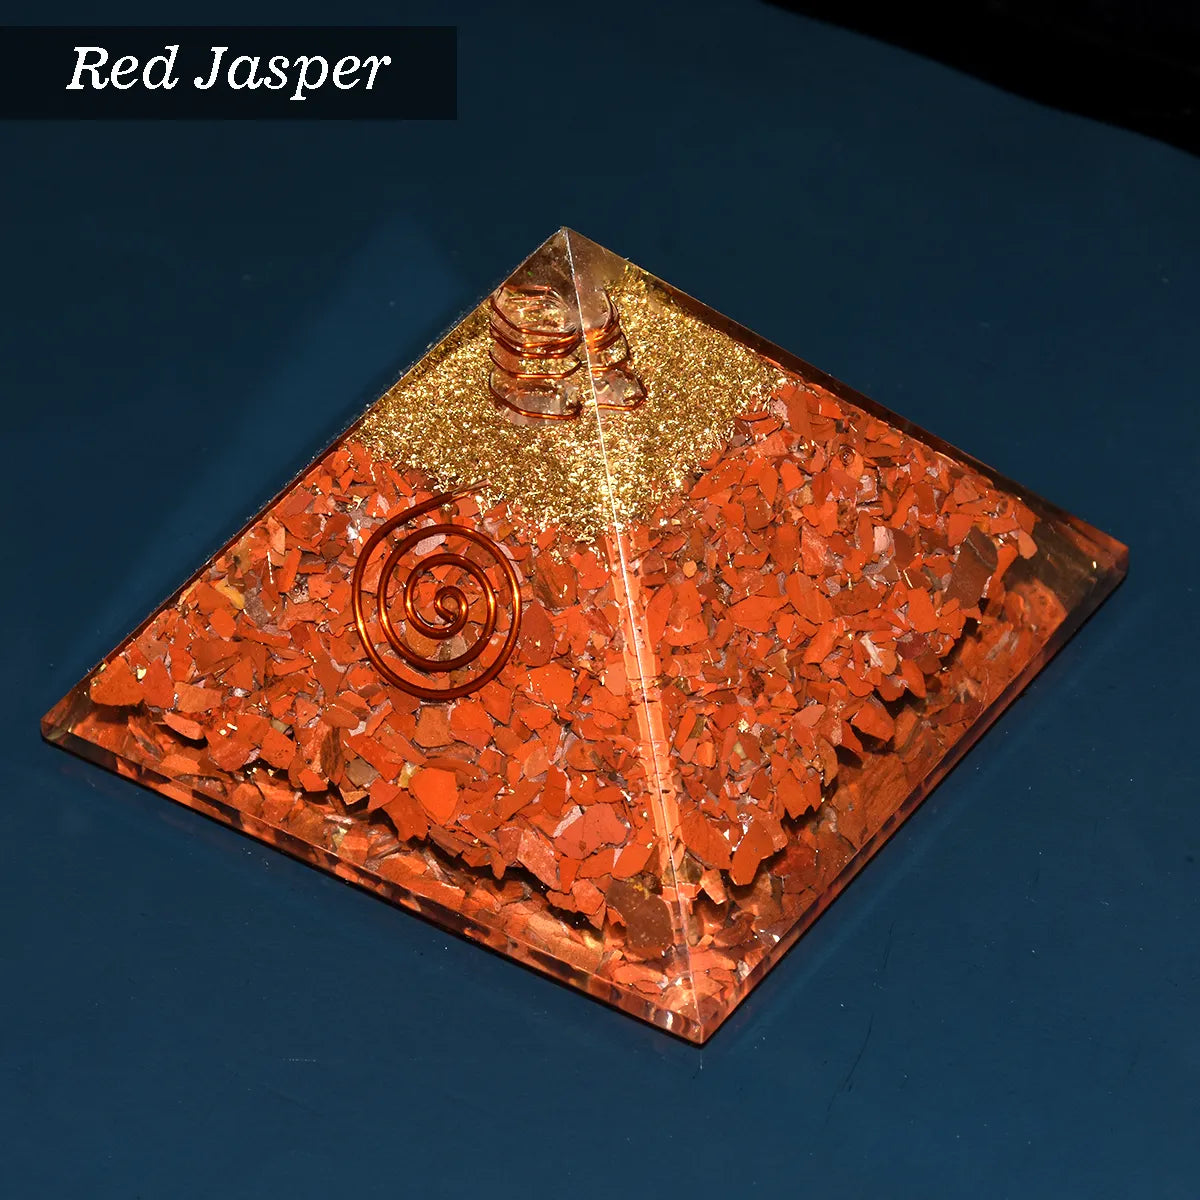 Red Jasper Pyramid 